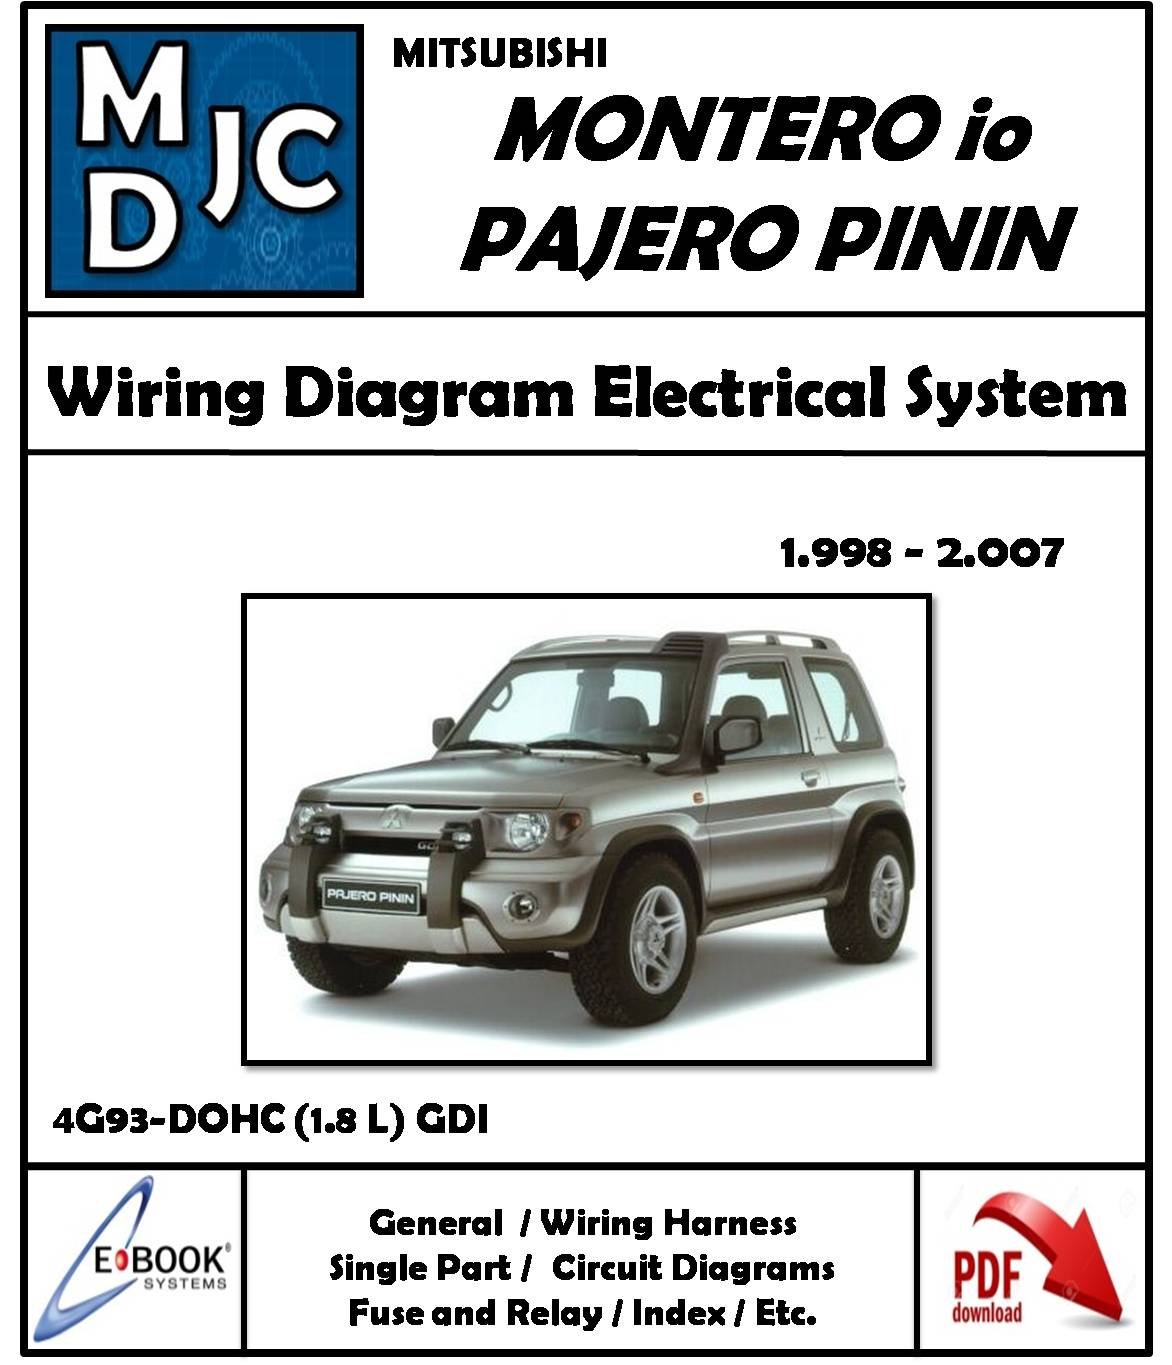 Mitsubishi Montero io / Pajero Pinin 1998 - 2007